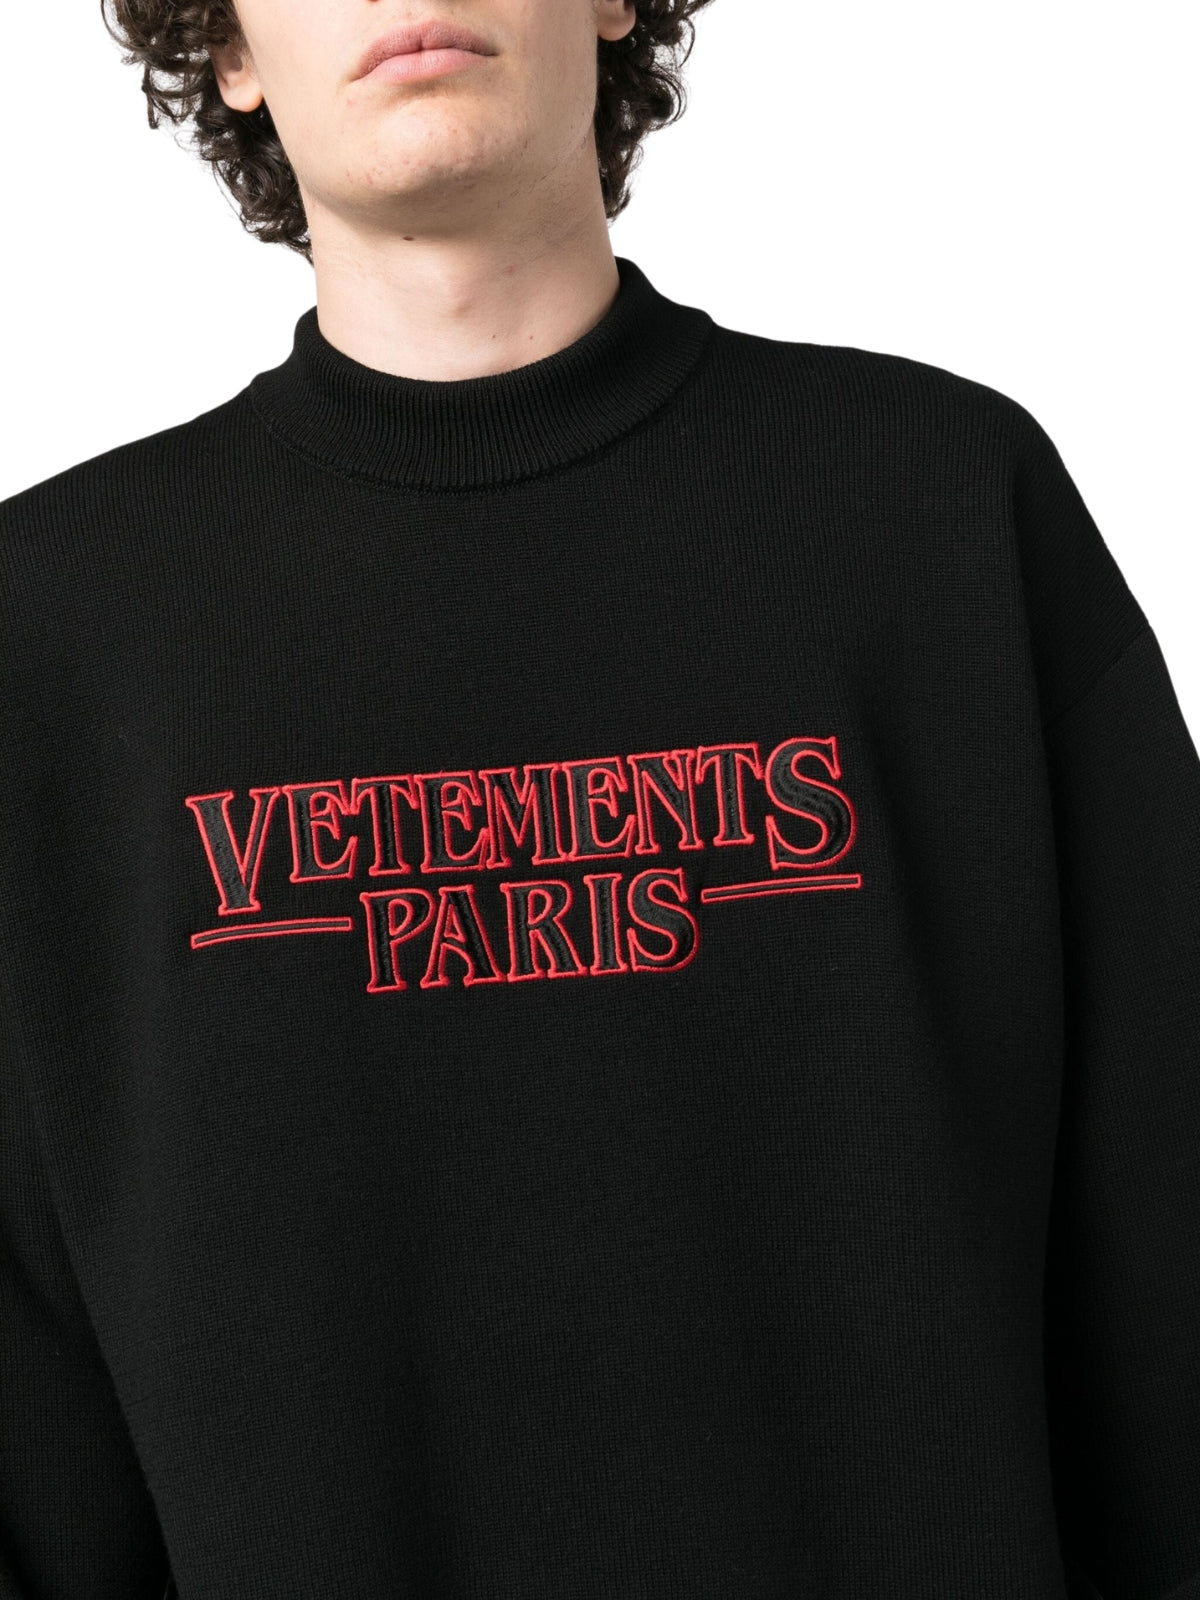 Vetements Sweater Knit Paris Black - 4